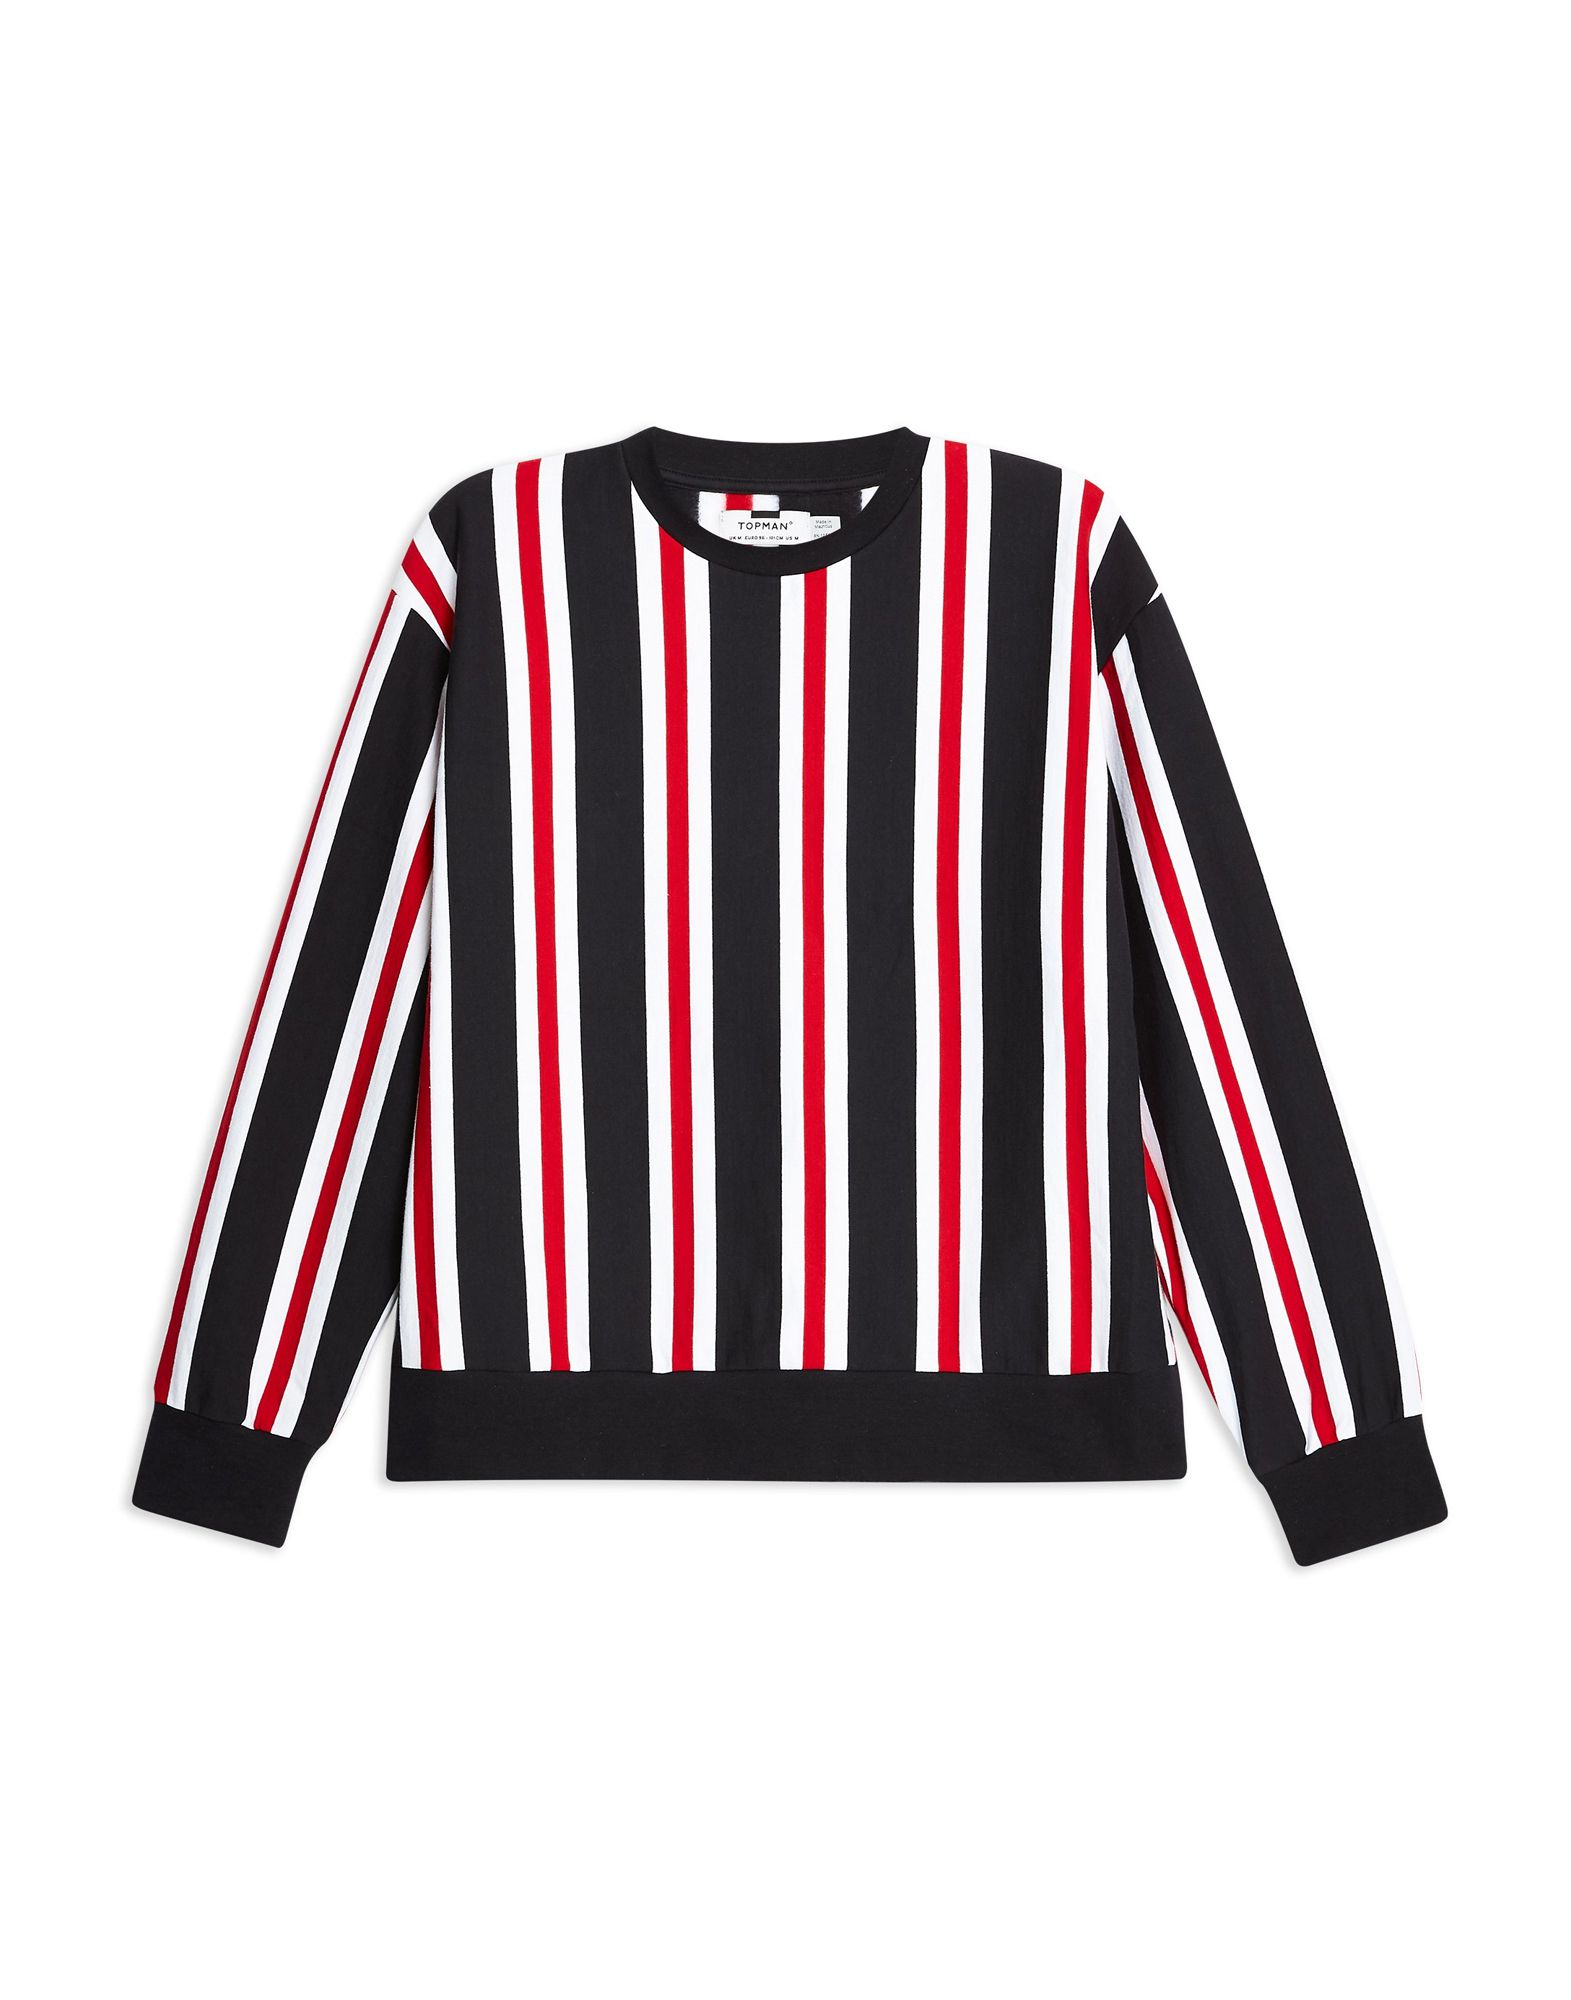 《期間限定セール開催中!》TOPMAN メンズ スウェットシャツ ダークブルー S コットン 100% Navy, Red and White Vertical Stripe Sweatshirt